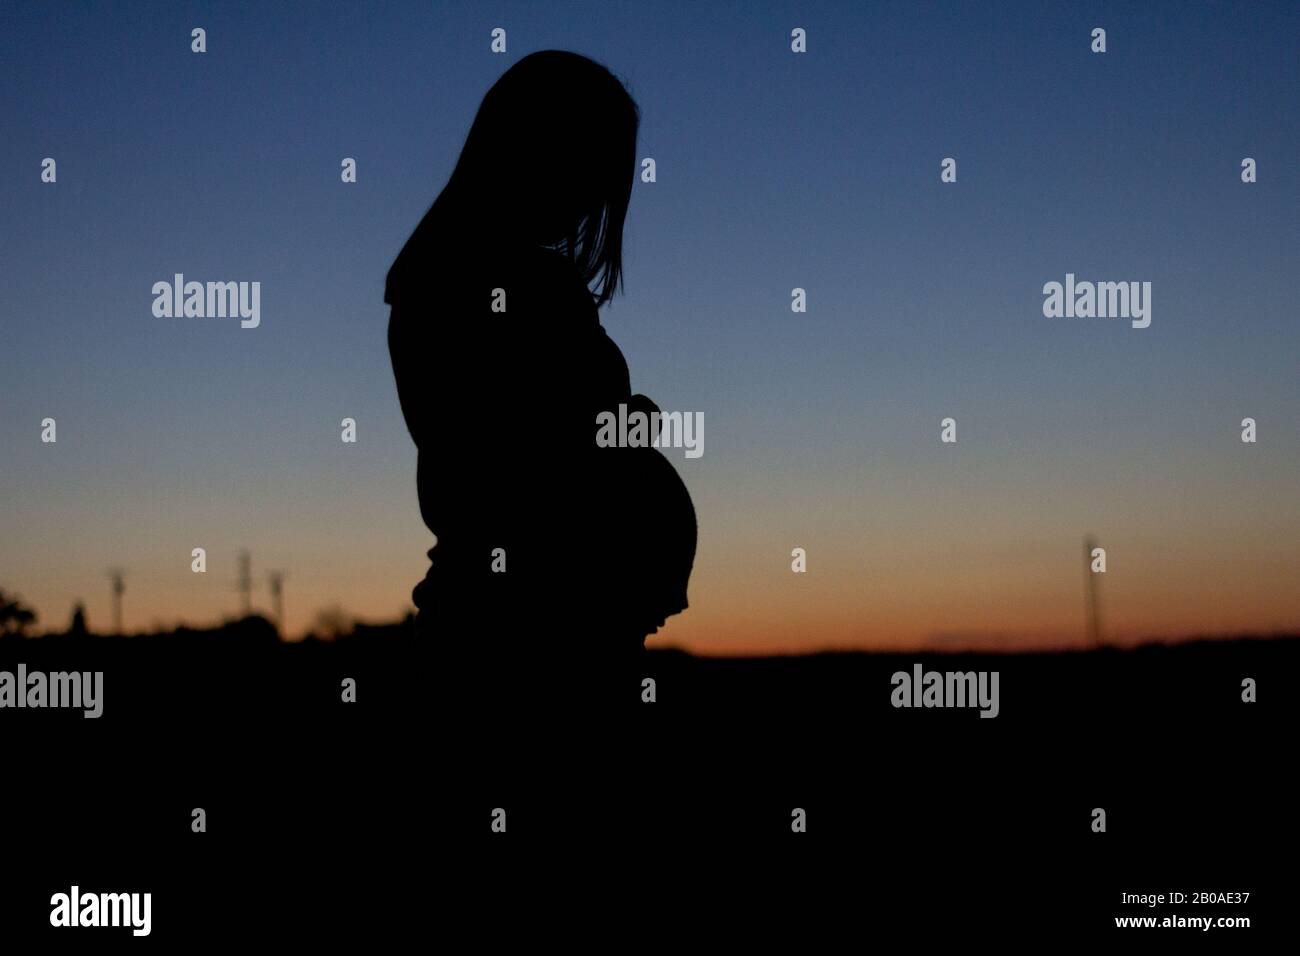 Eine schwangere Frau wird gegen einen bunten Sonnenuntergang silhouetted Stockfoto